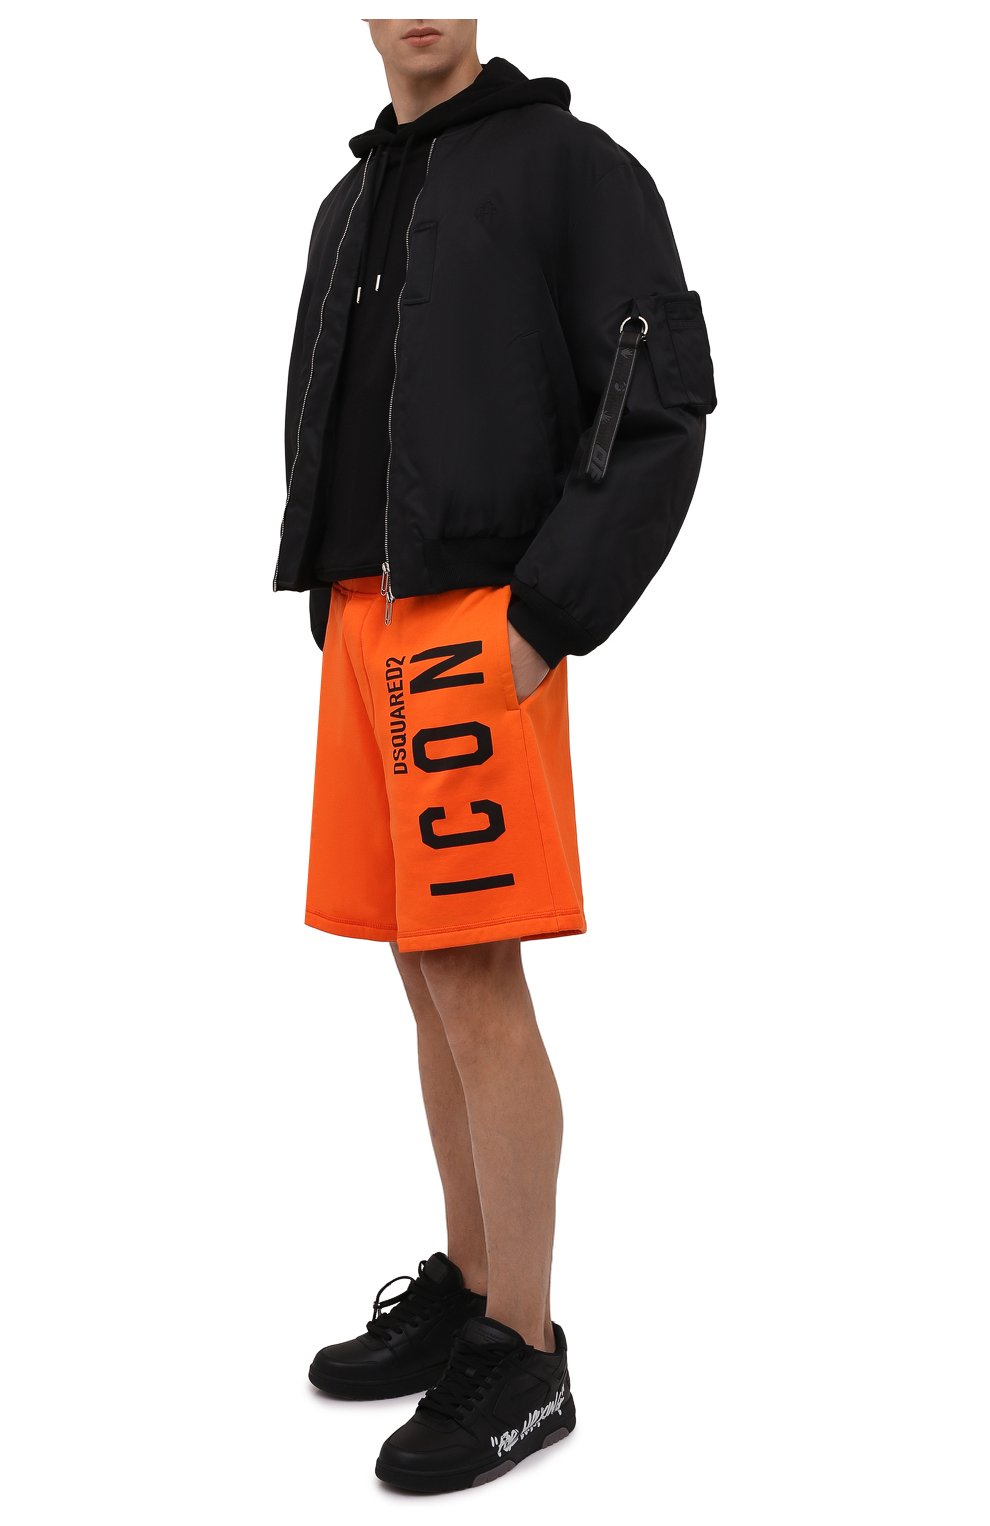 Мужские хлопковые шорты DSQUARED2 оранжевого цвета, арт. S79MU0029/S25516 | Фото 2 (Длина Шорты М: До колена; Случай: Повседневный; Стили: Гранж; Принт: С принтом; Материал внешний: Хлопок)